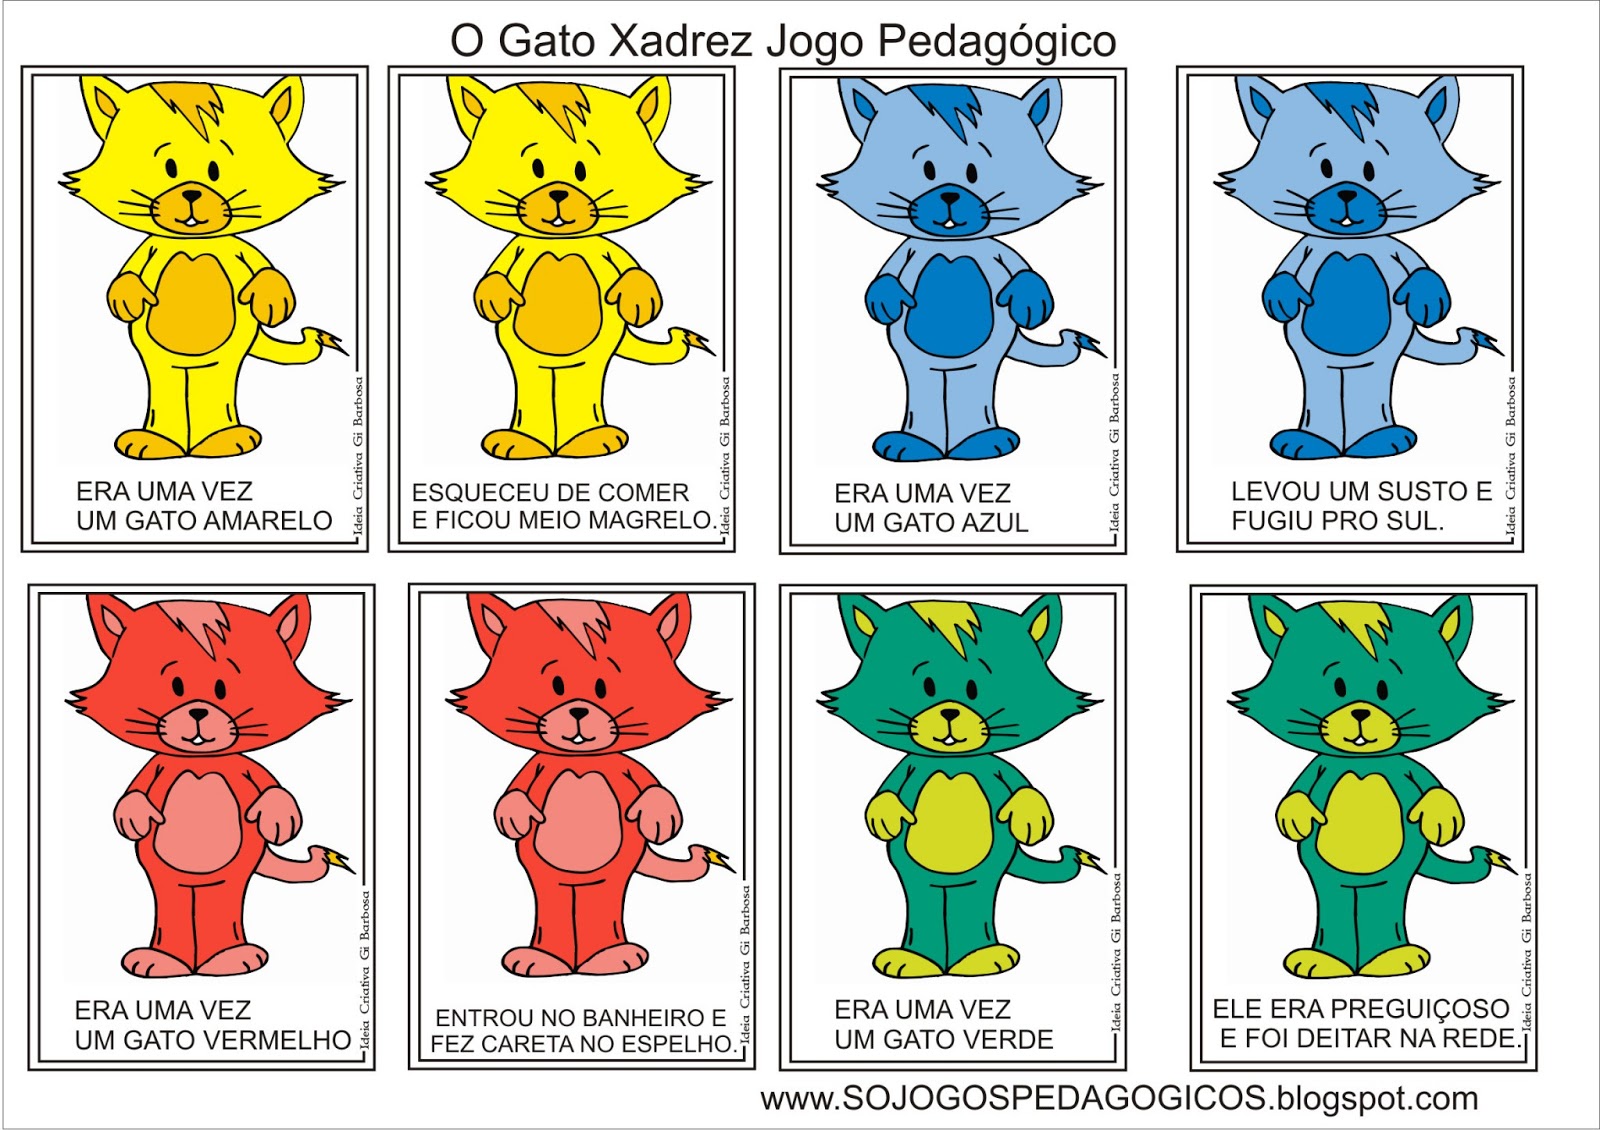 Era uma vez um gato xadrez para colorir e atividades - Pedagogia Letramento